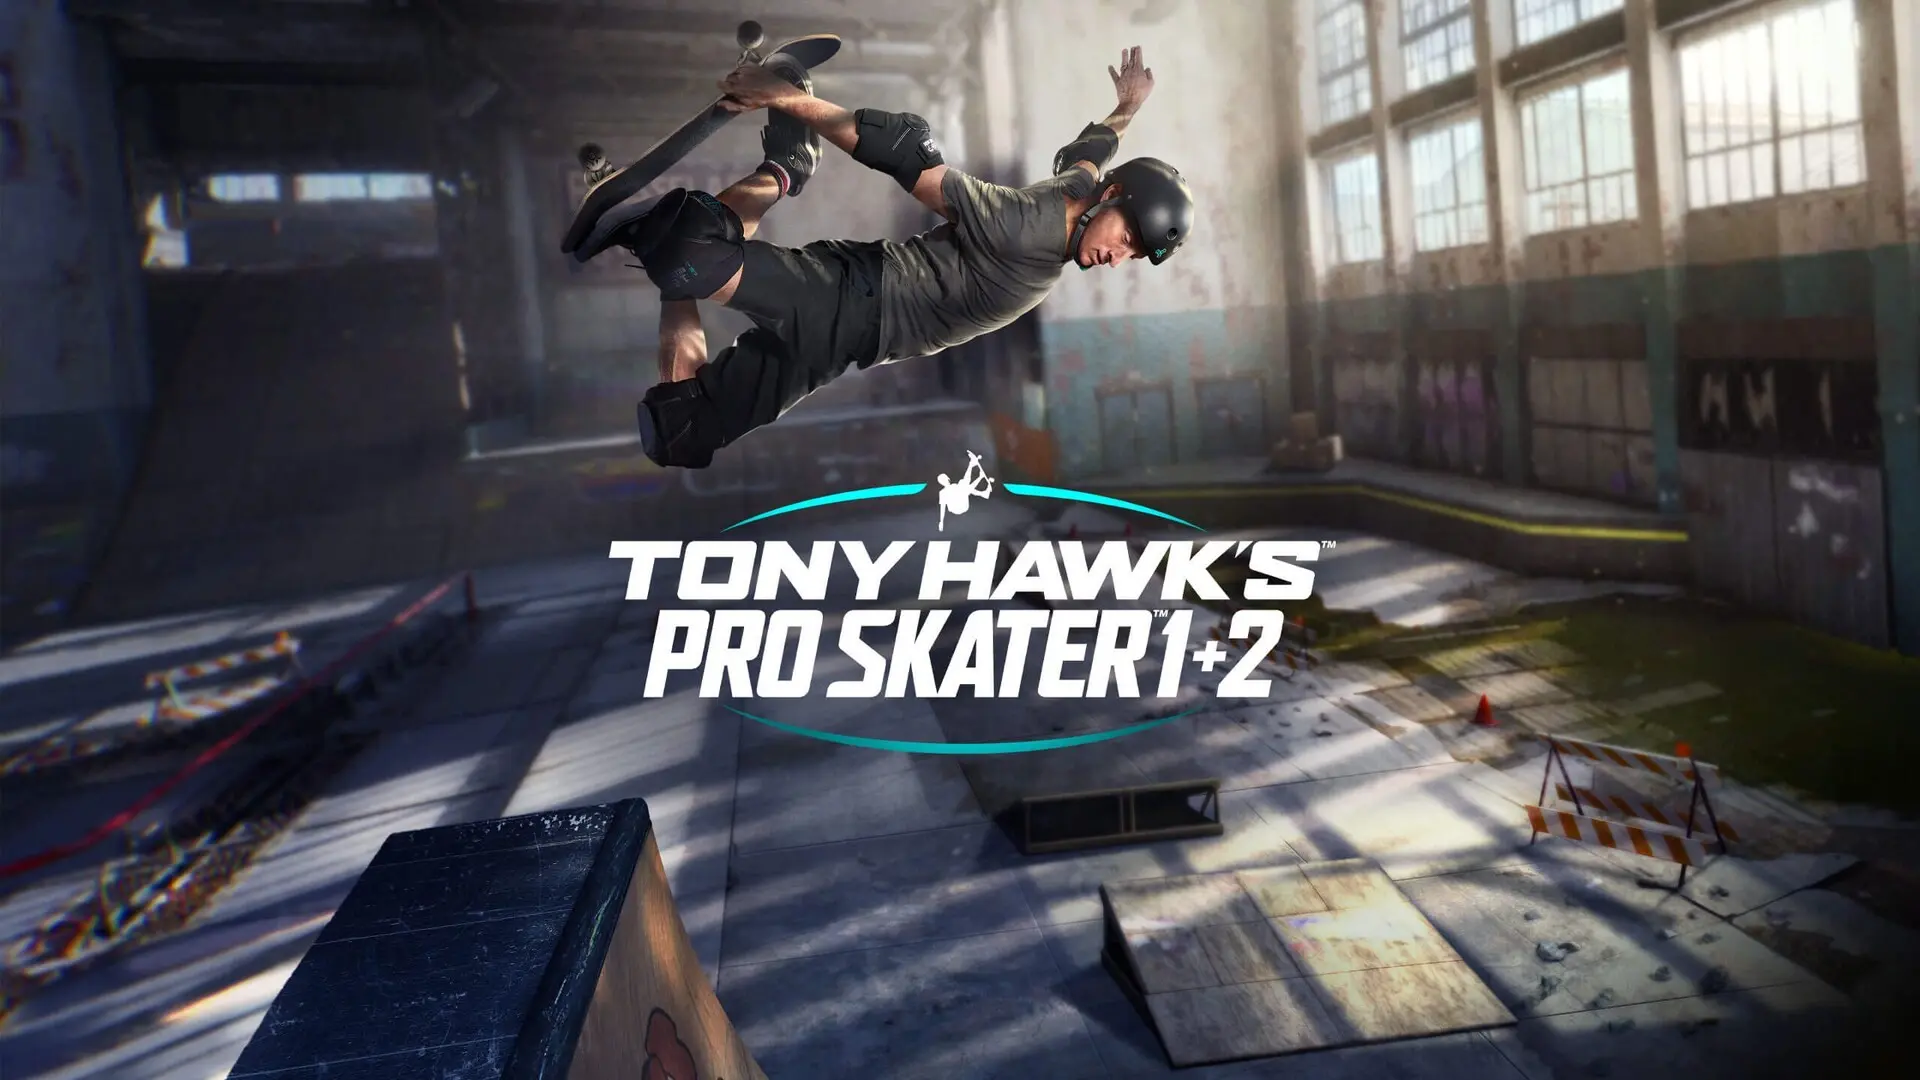 Une version d'essai gratuite de Tony Hawk's Pro Skater 1 + 2 est disponible.